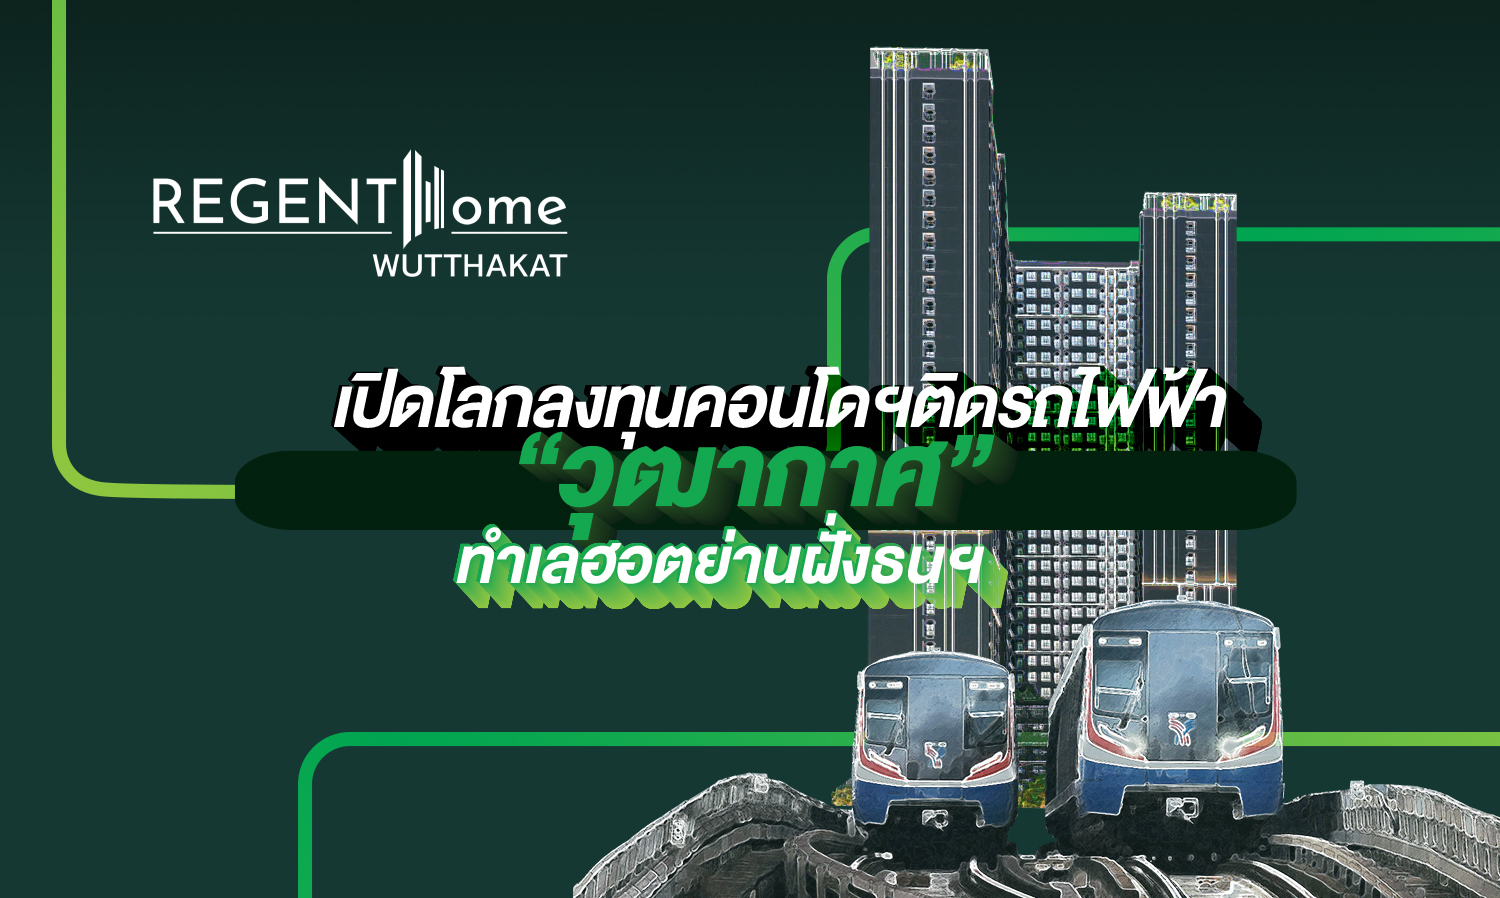 regent-home-wutthakat-เปิดโลกลงทุนคอนโดฯ-ติดรถไฟฟ้า-ทำเลฮอตย่านฝั่งธนฯ-ฉบับสบายกระเป๋า